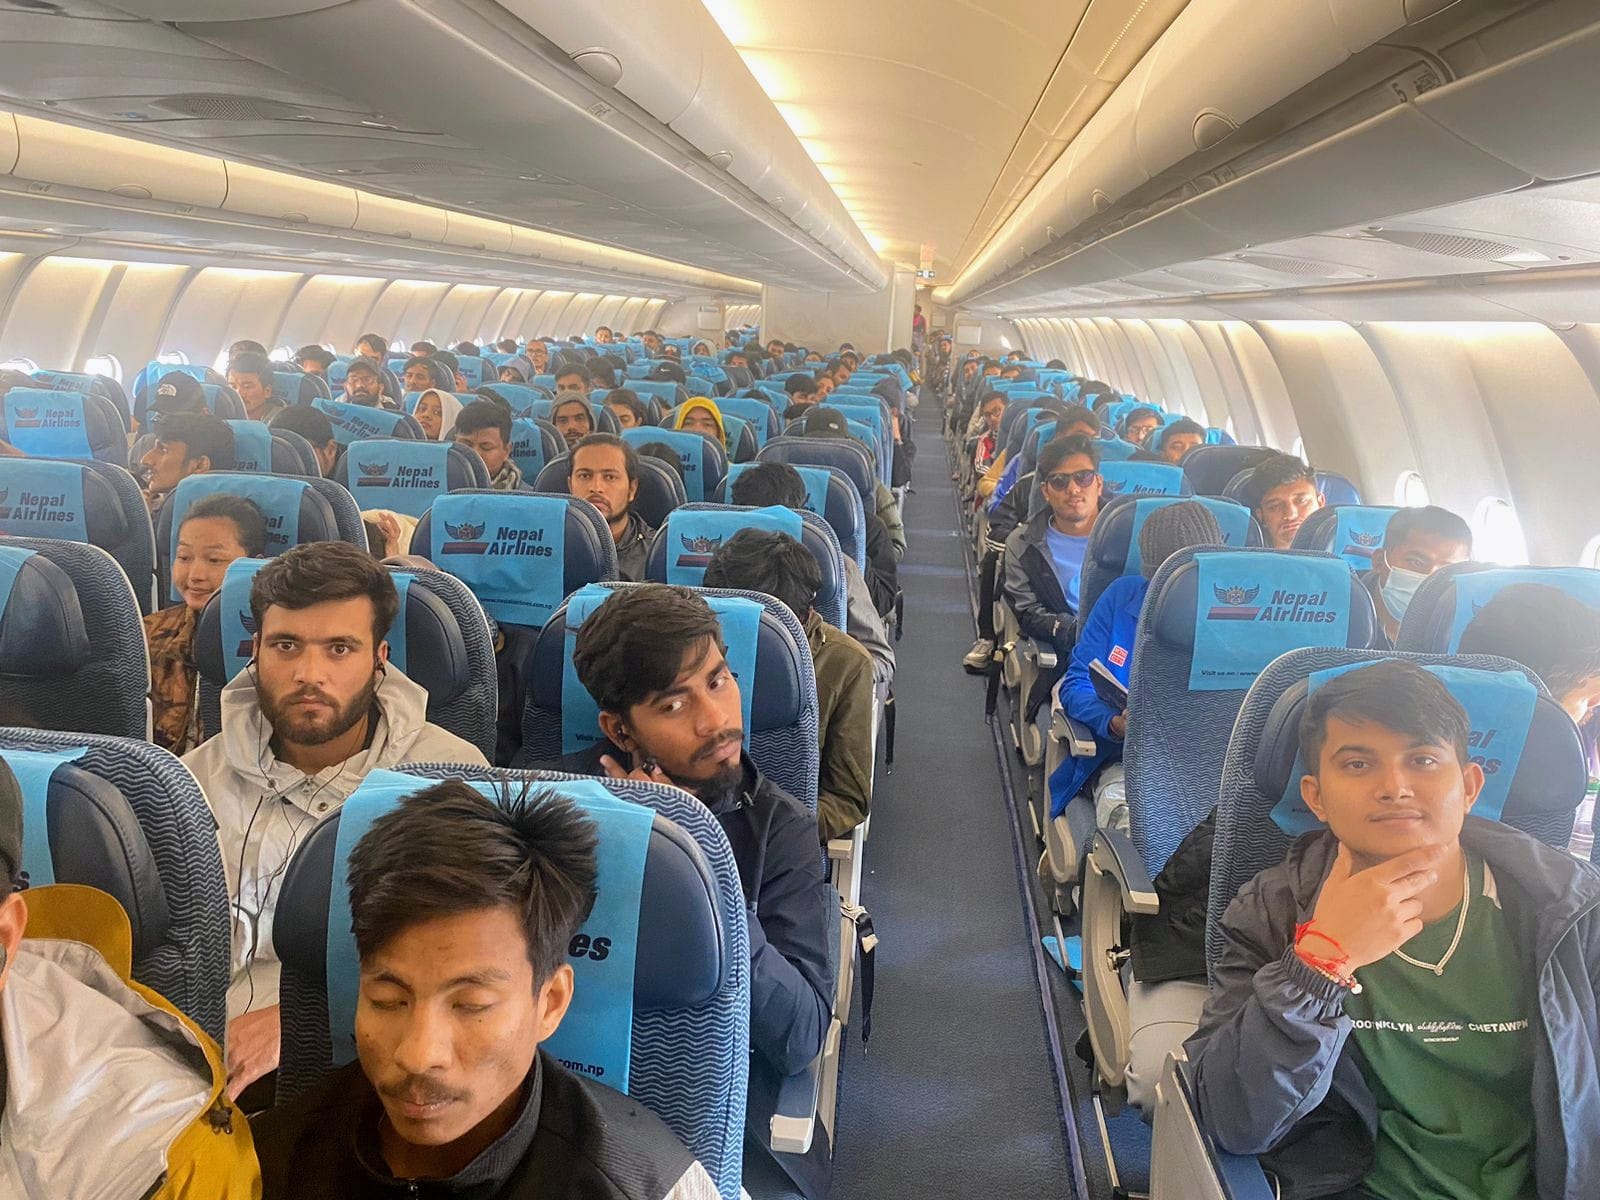 इजरायलबाट २५३ विद्यार्थी लिएर नेपालतर्फ उड्यो विमान